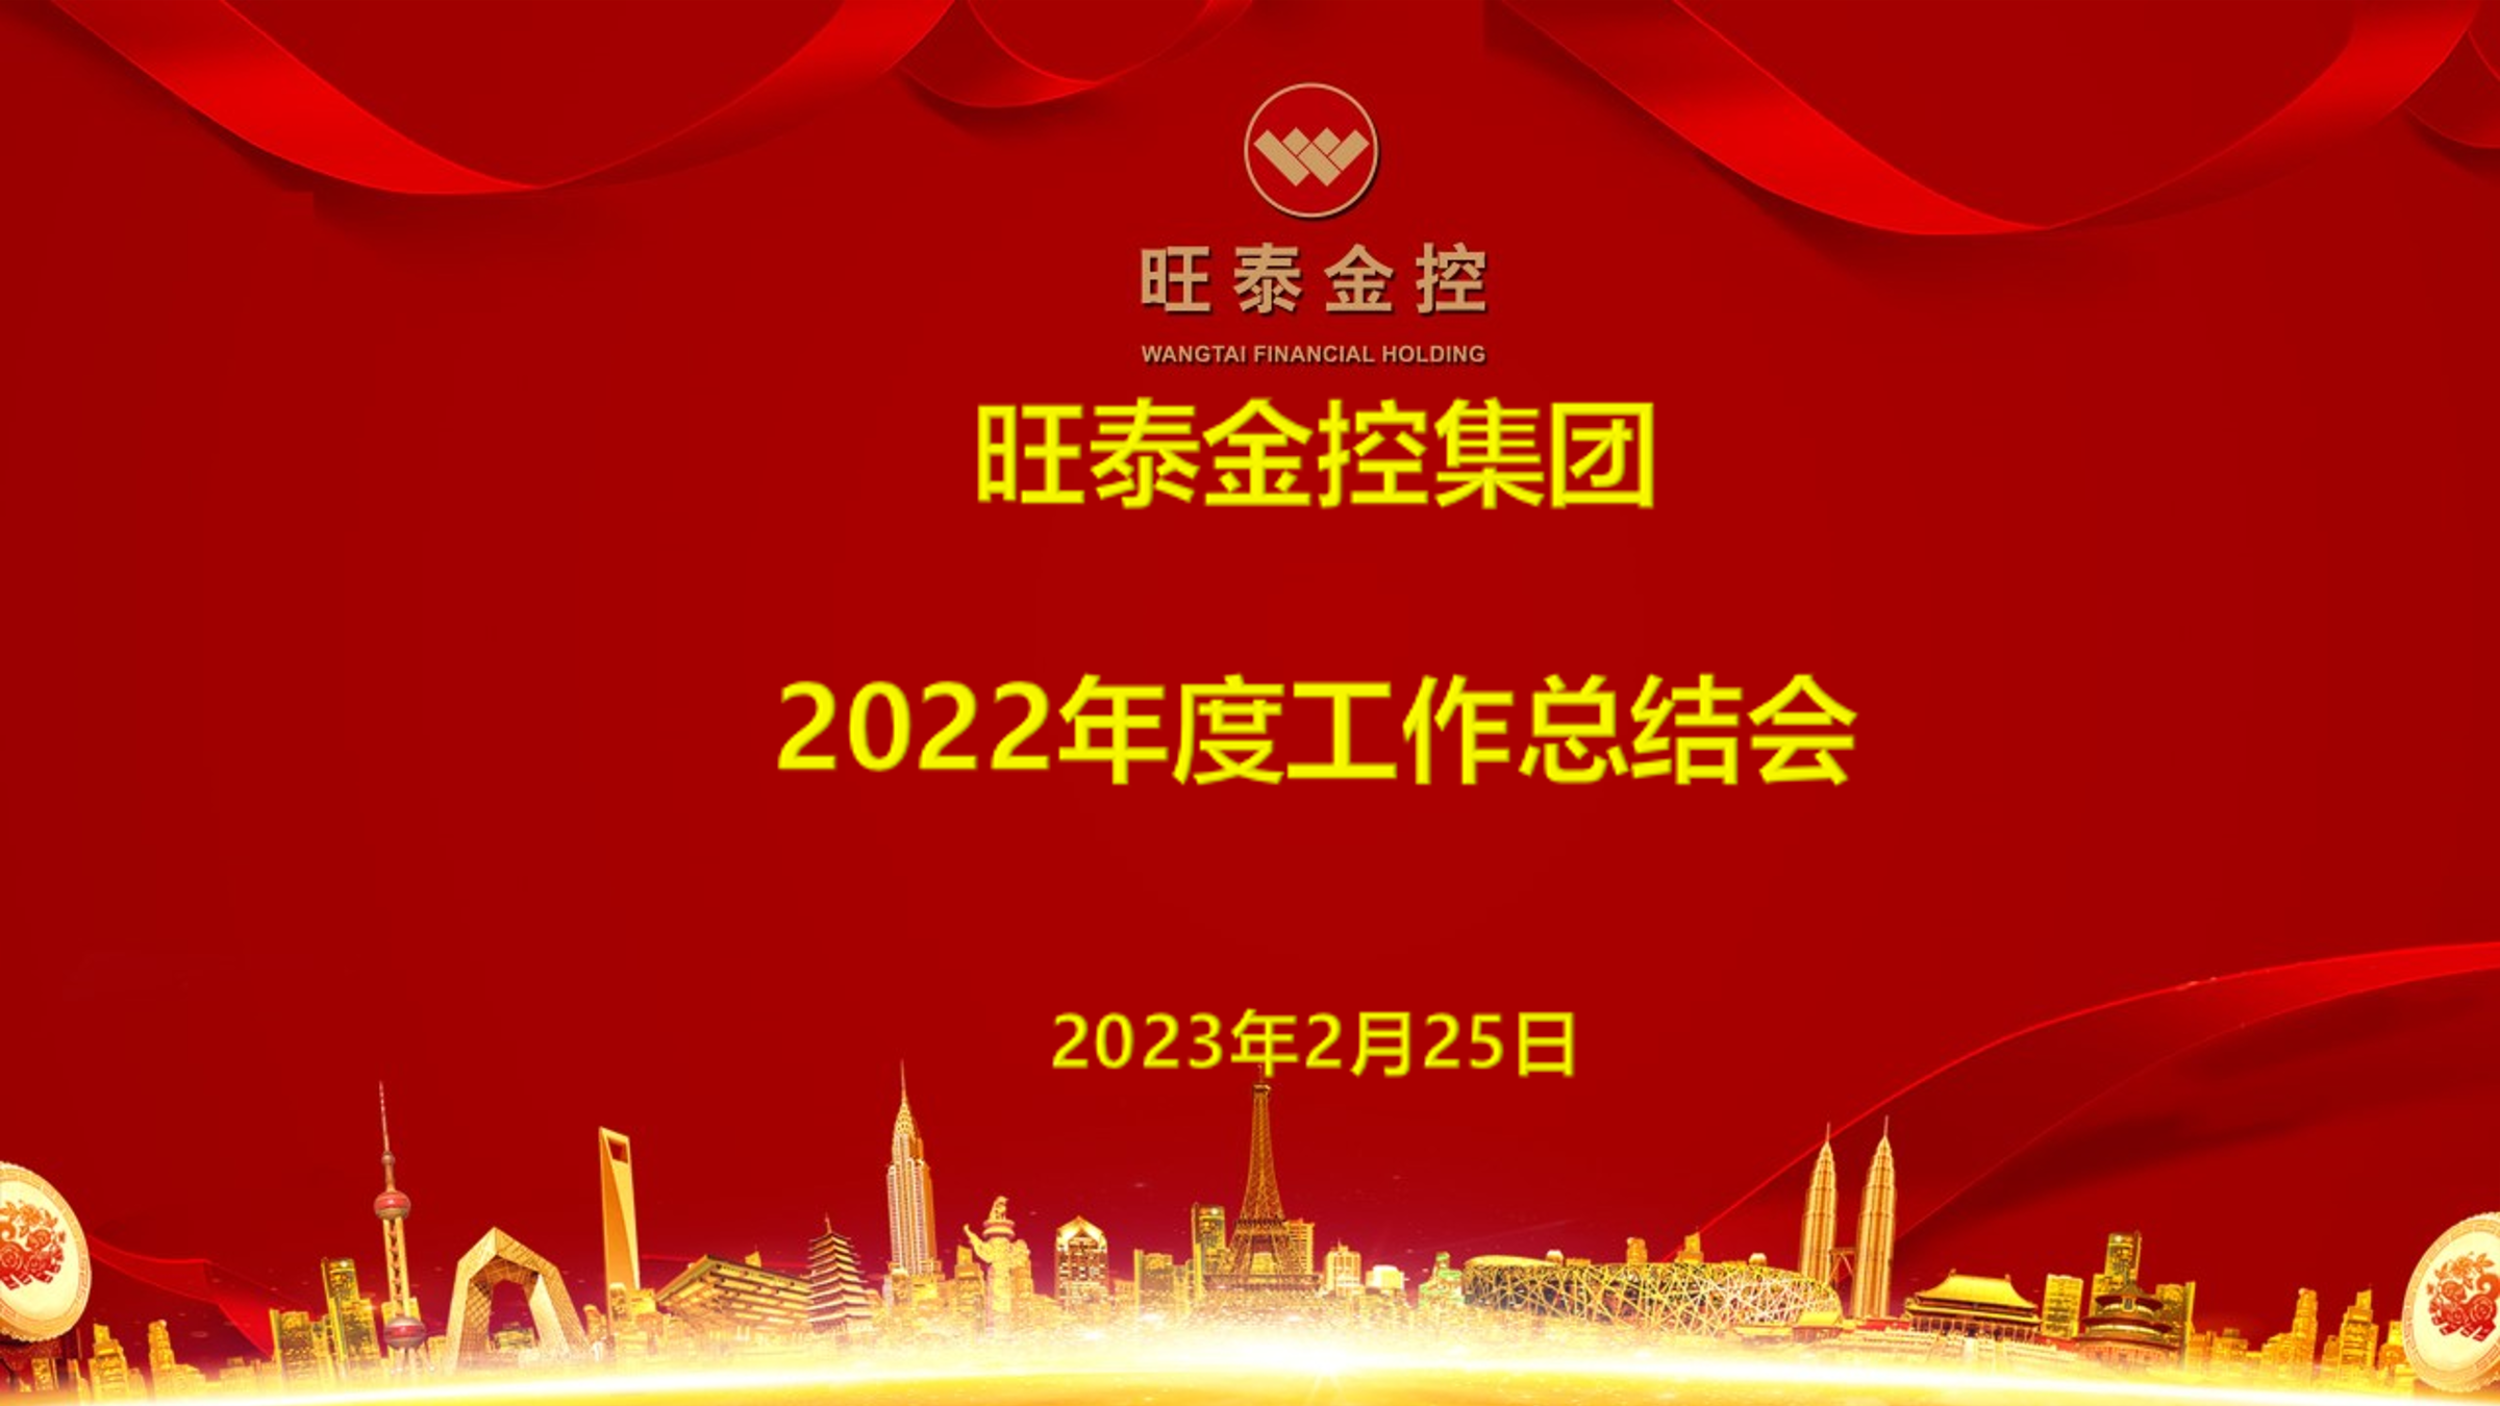 旺泰金控集团2022年度工作总结会暨 2023任务指标签约仪式圆满召开